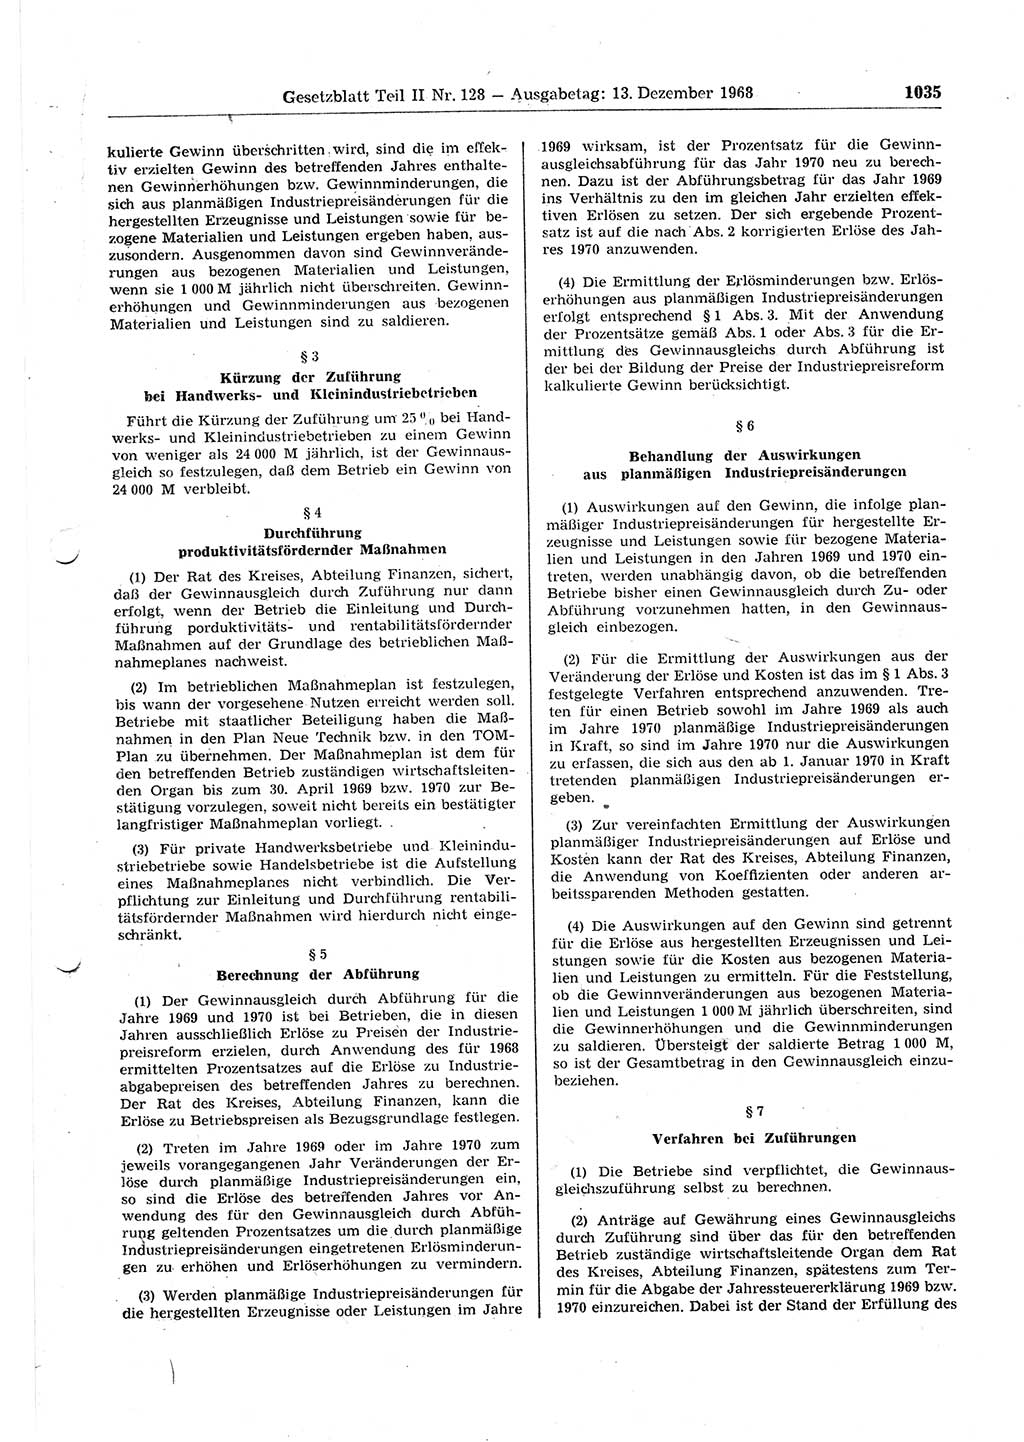 Gesetzblatt (GBl.) der Deutschen Demokratischen Republik (DDR) Teil ⅠⅠ 1968, Seite 1035 (GBl. DDR ⅠⅠ 1968, S. 1035)